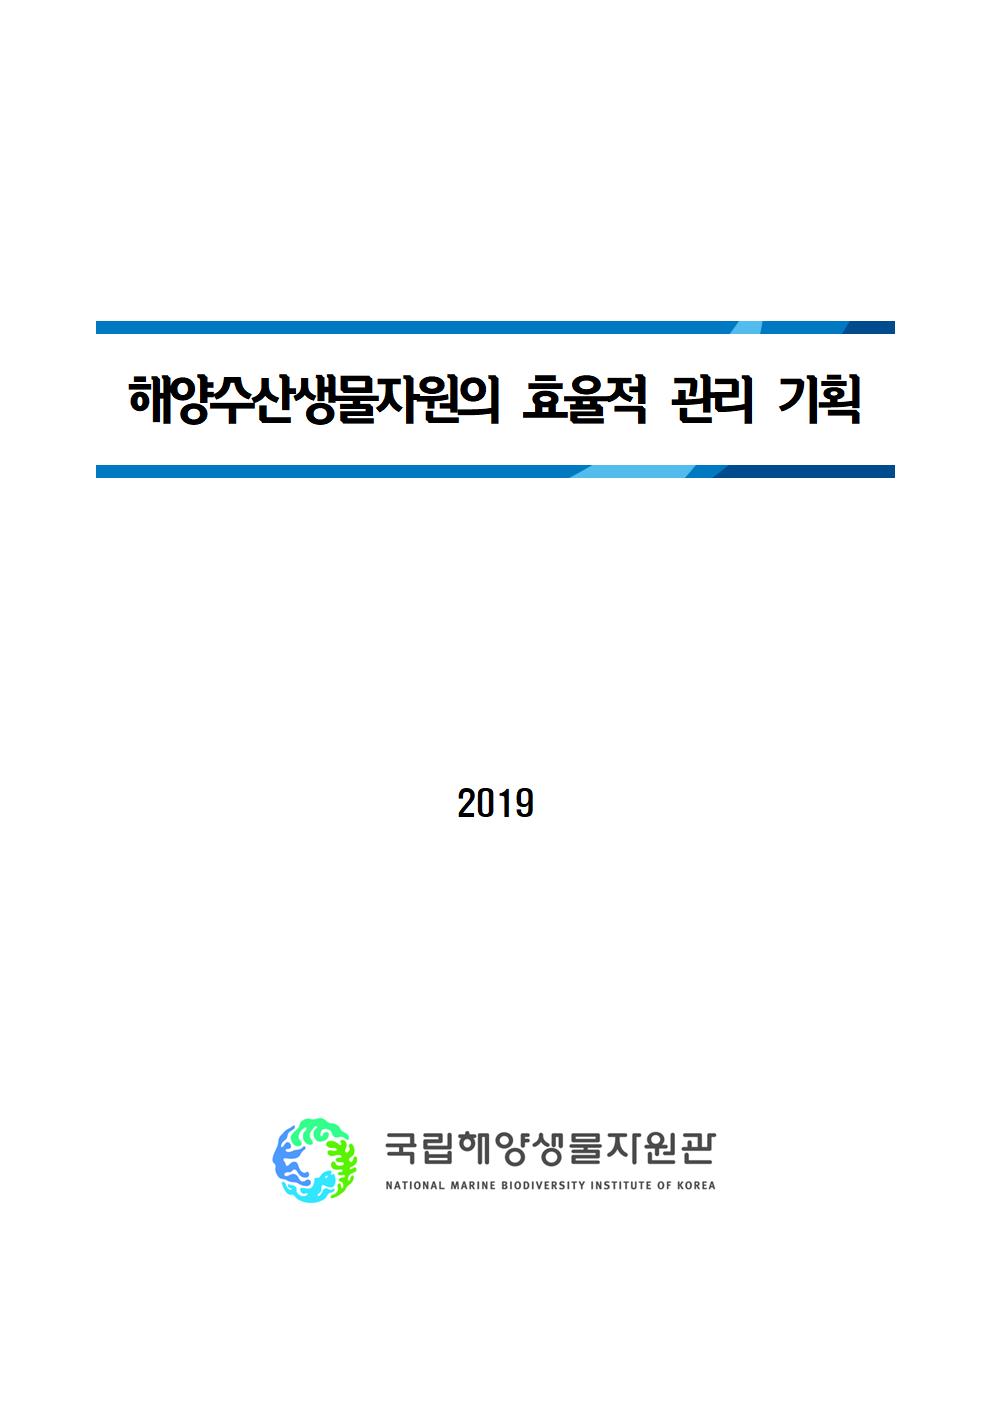 [2019년 기관고유사업] 현지내 해양 수산생물자원의 효율적 관리 기획연구